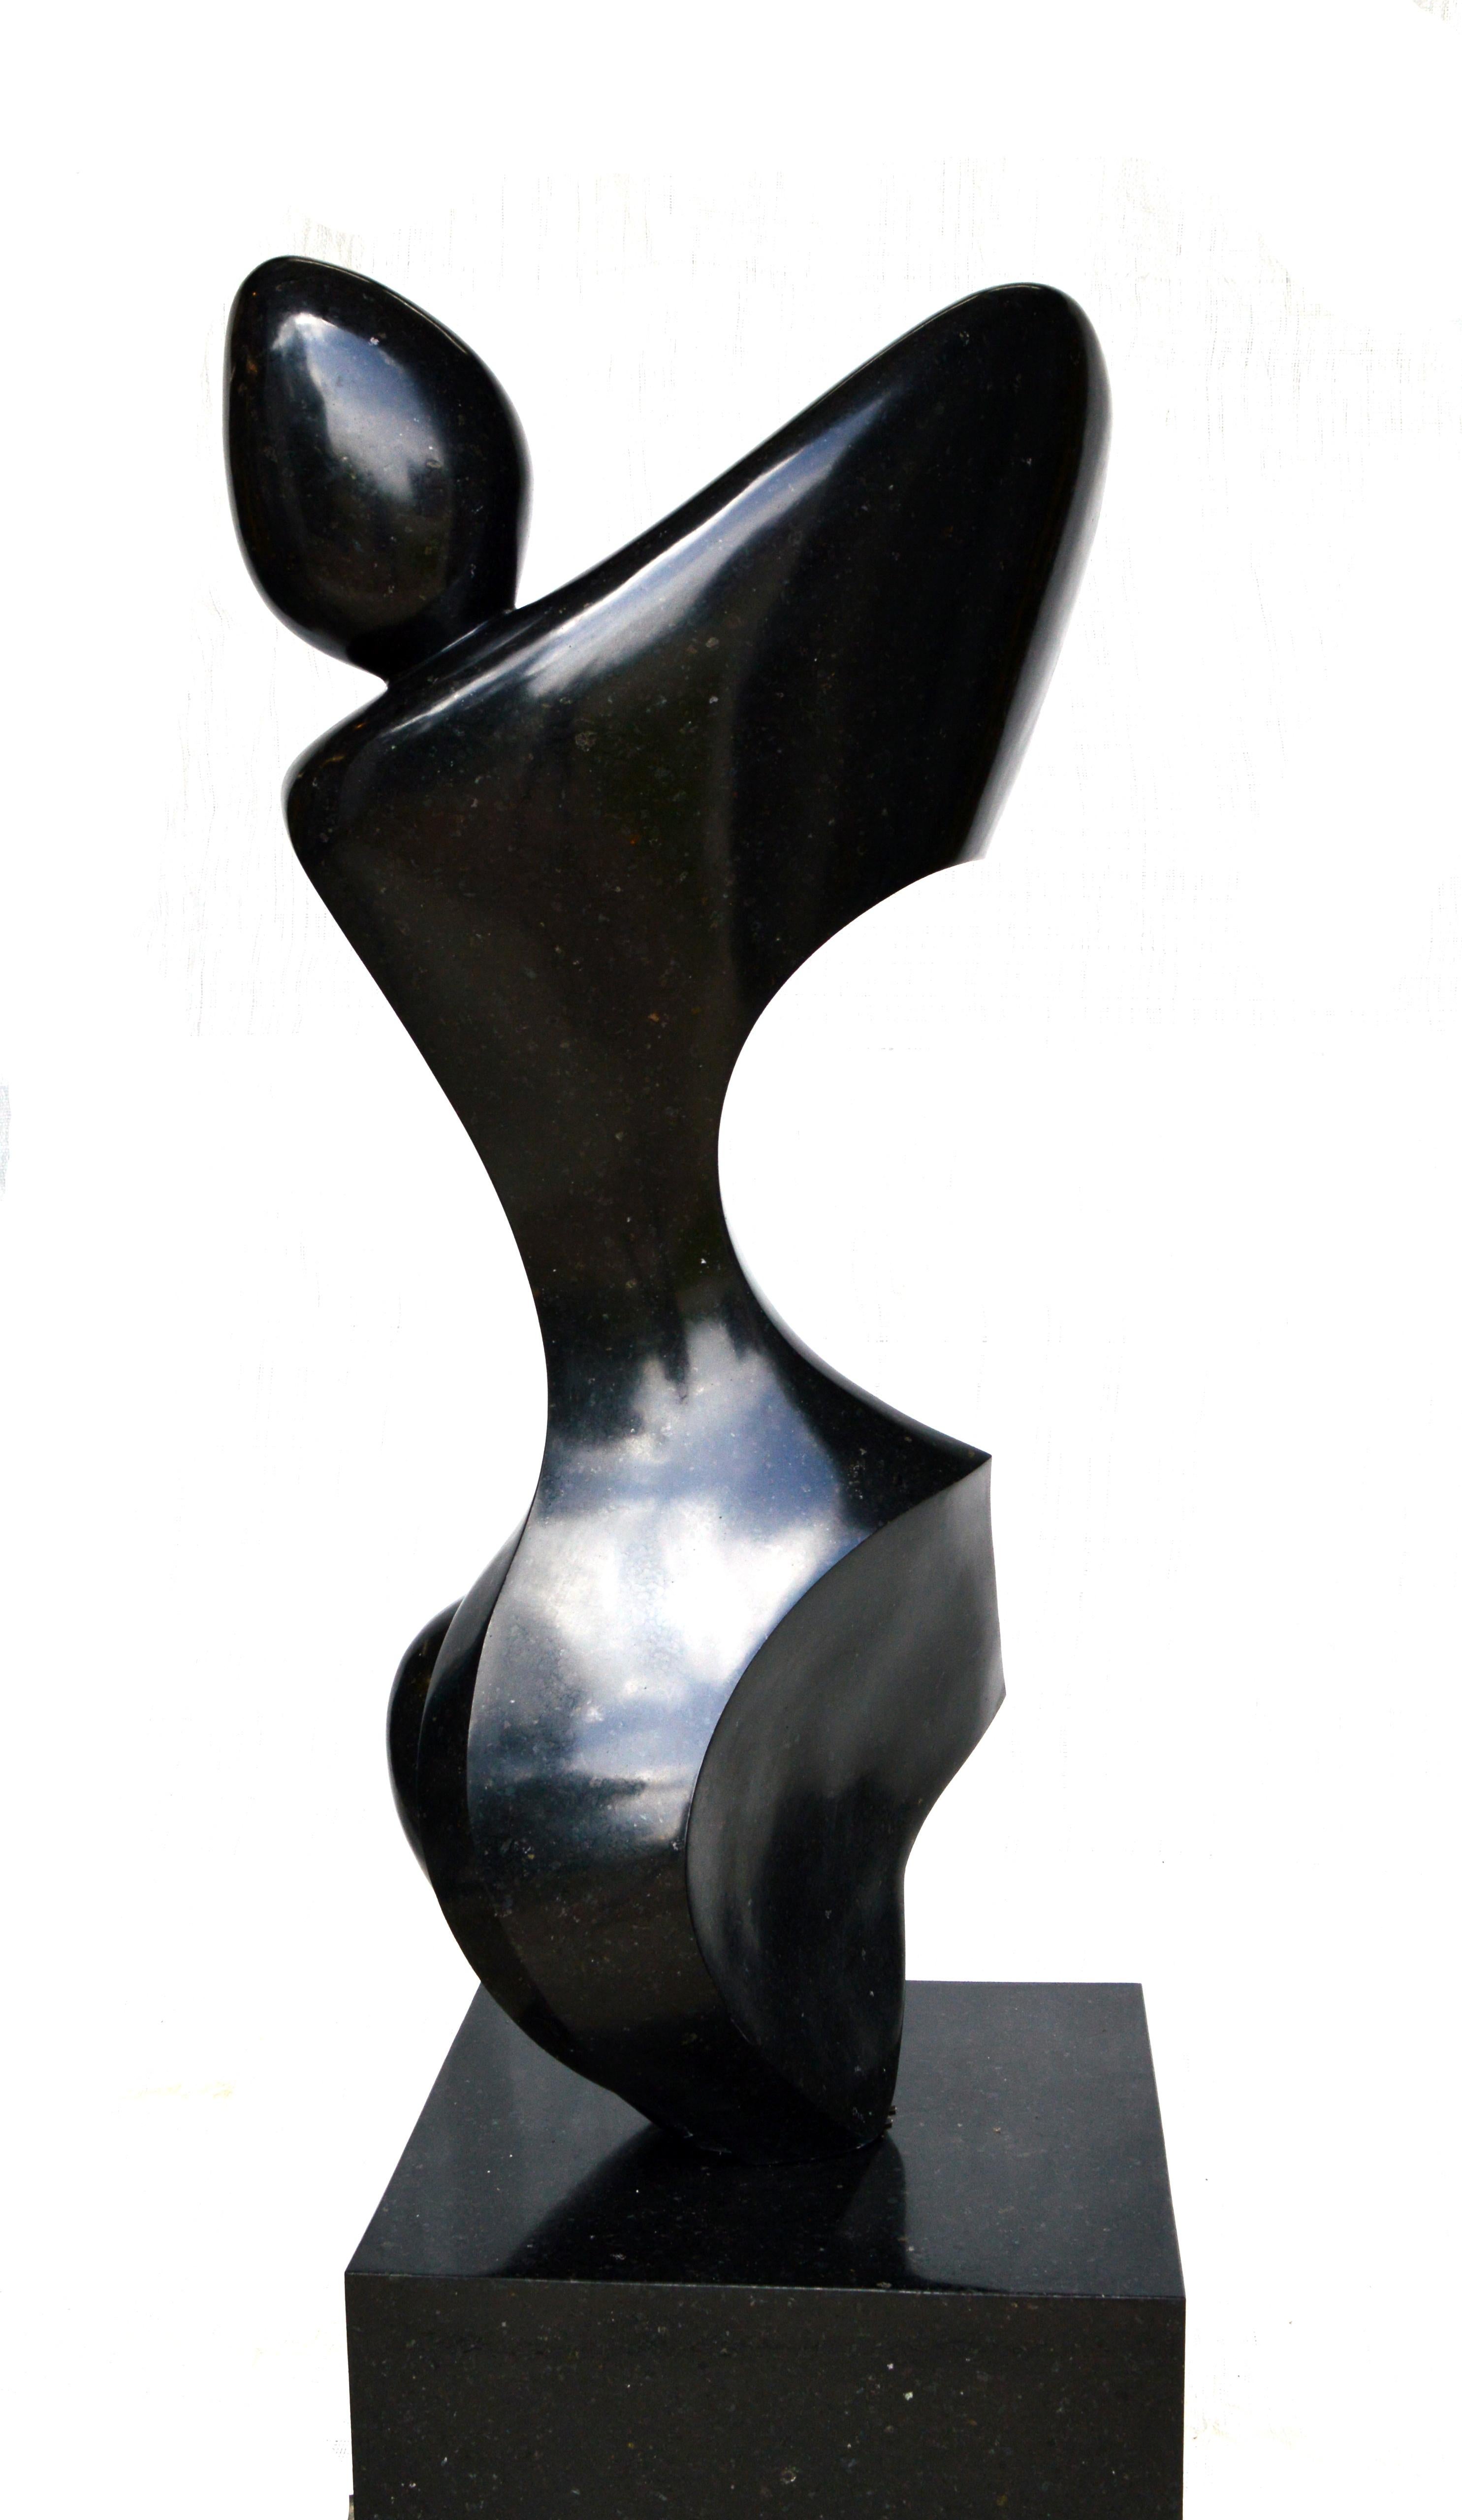 Anatomische 3/50 - glatt, schwarz, Granit, im Innen- und Außenbereich, figurative Skulptur – Sculpture von Jeremy Guy